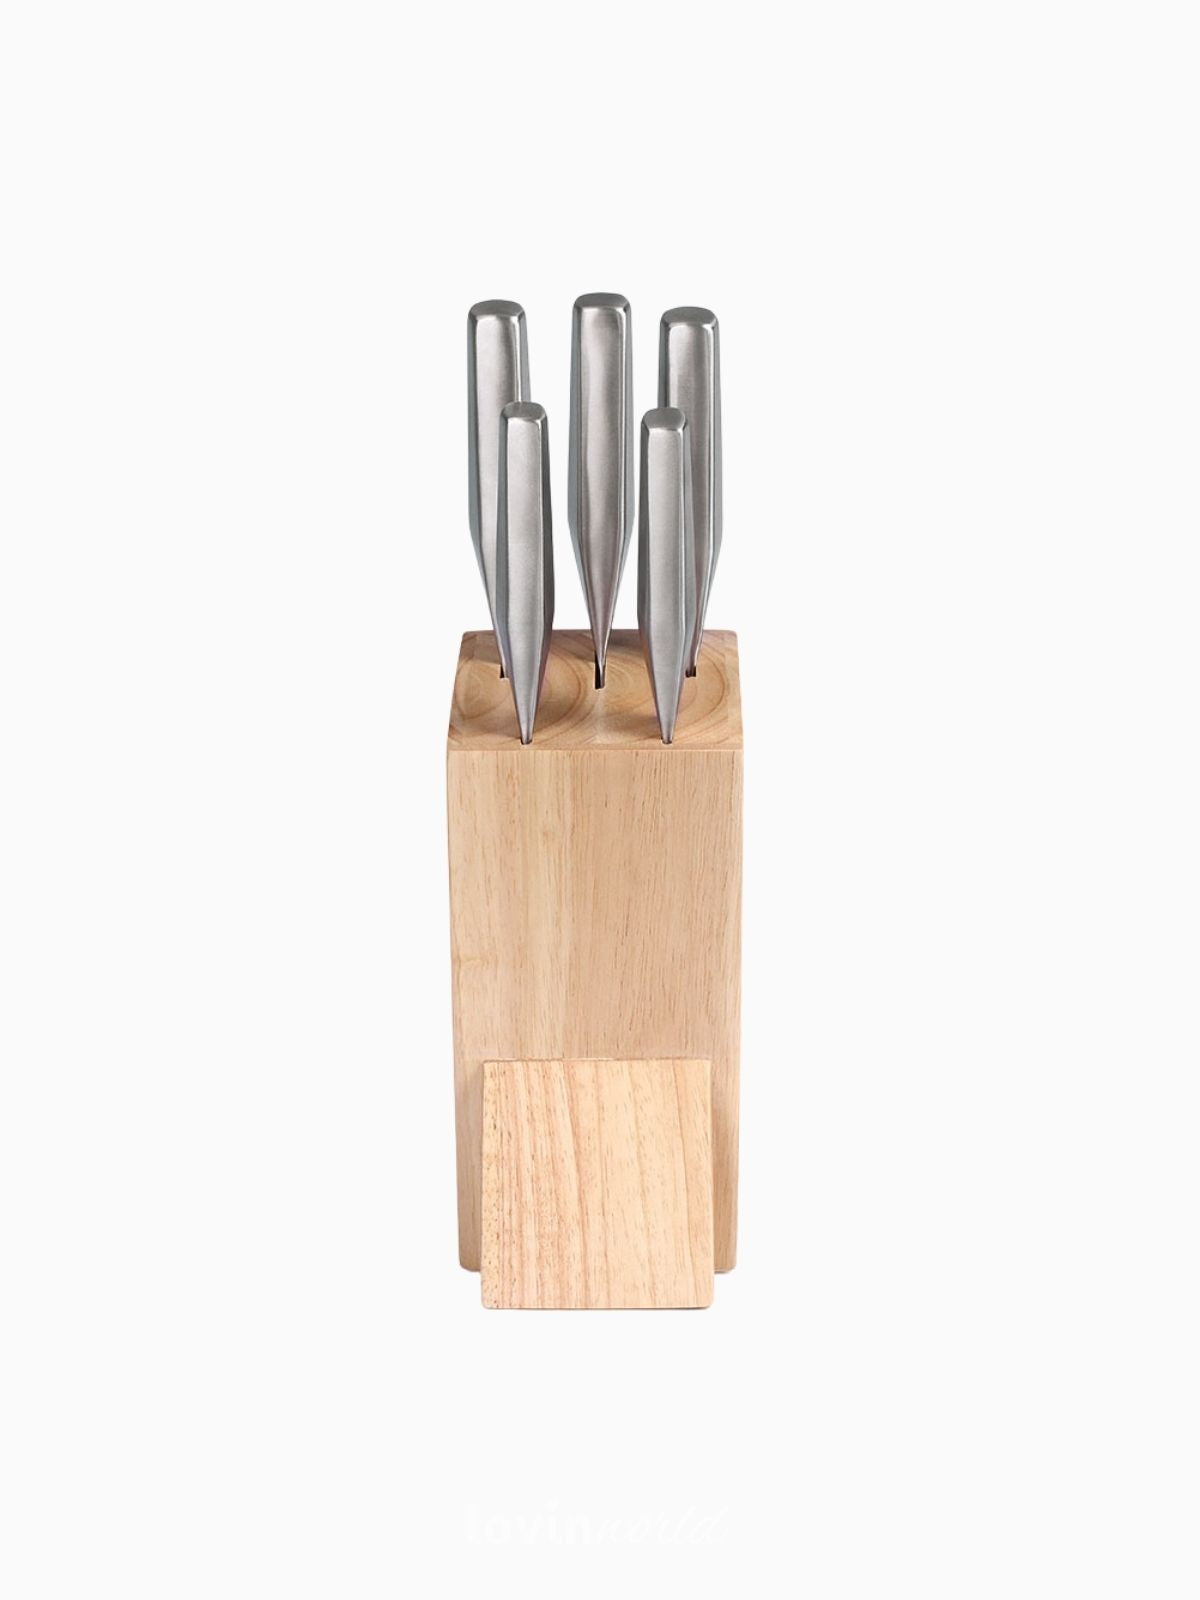 Ceppo in legno con 5 coltelli in acciaio inox MEC134-2